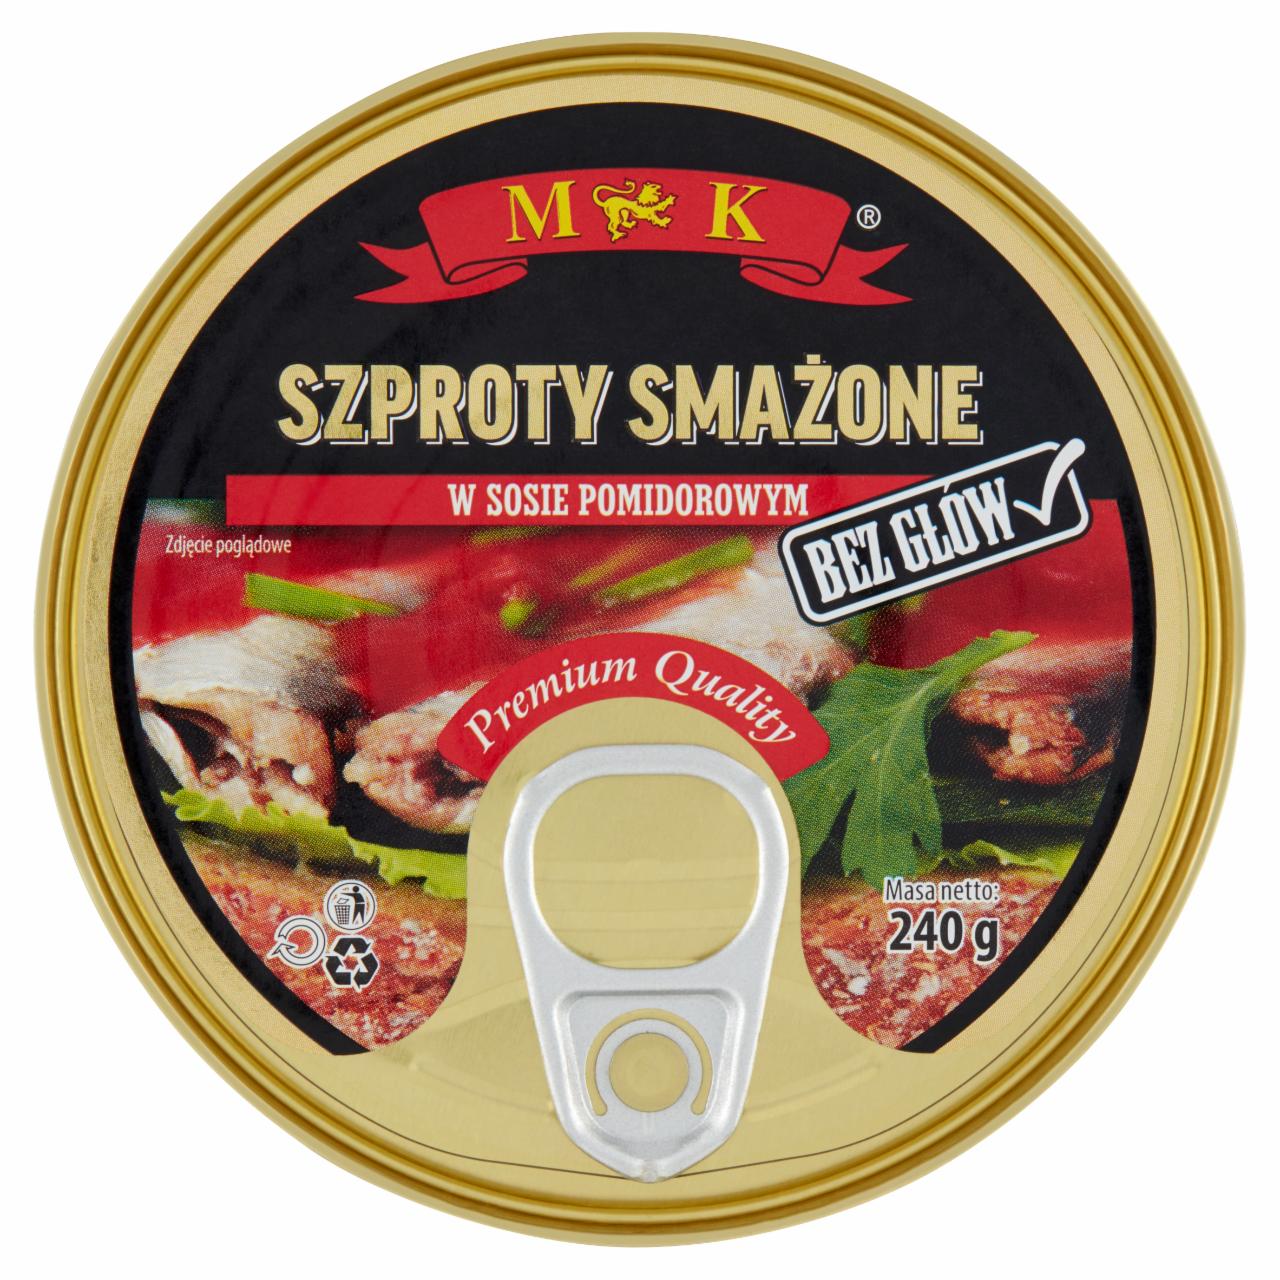 Zdjęcia - MK Szproty smażone w sosie pomidorowym 240 g